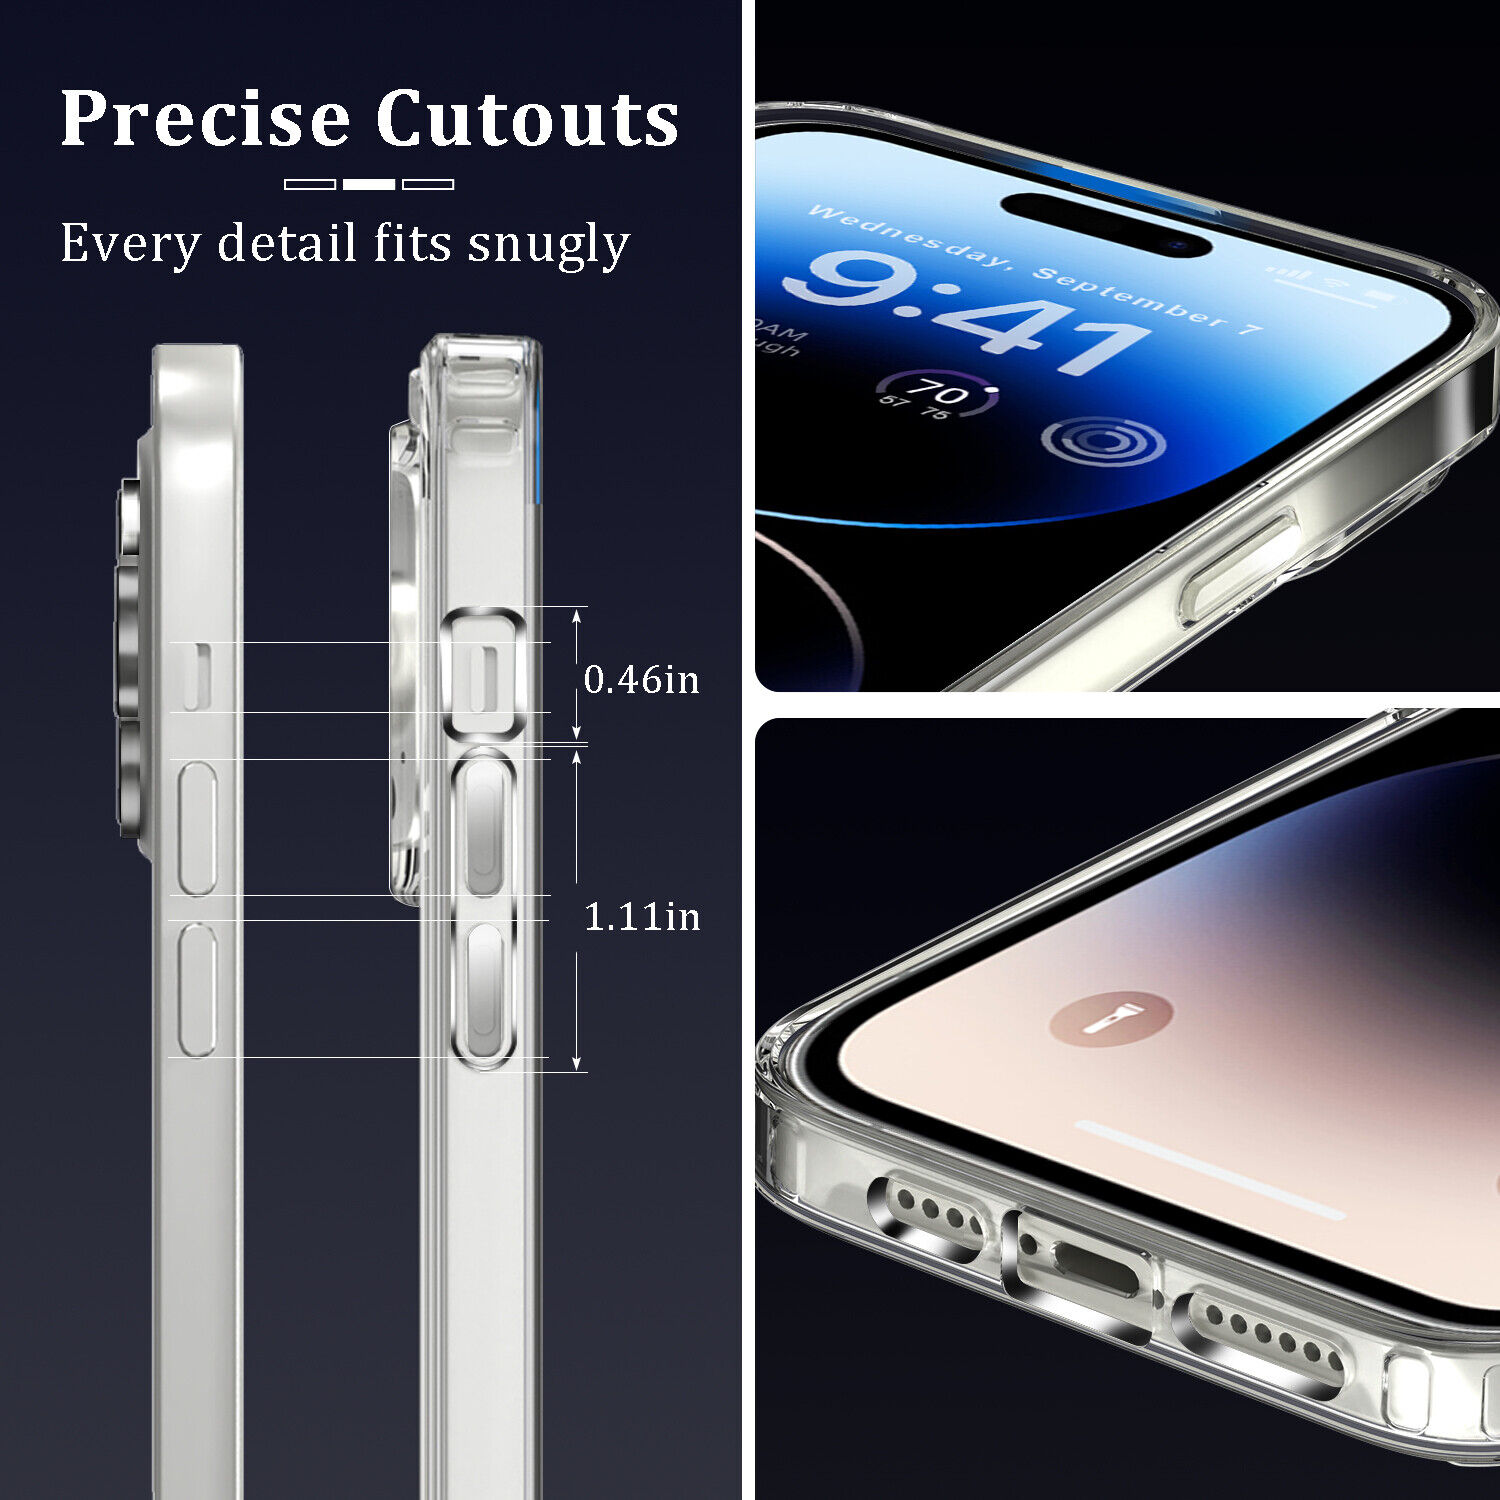 Ốp lưng Maqsafe cho Samsung Galaxy Z Fold 4 chống sốc trong suốt hỗ trợ sạc Maqsafe hiệu Likgus Maqsafe Magetic Case siêu mỏng 1.5mm, độ trong tuyệt đối, chống trầy xước, chống ố vàng, tản nhiệt tốt - hàng nhập khẩu